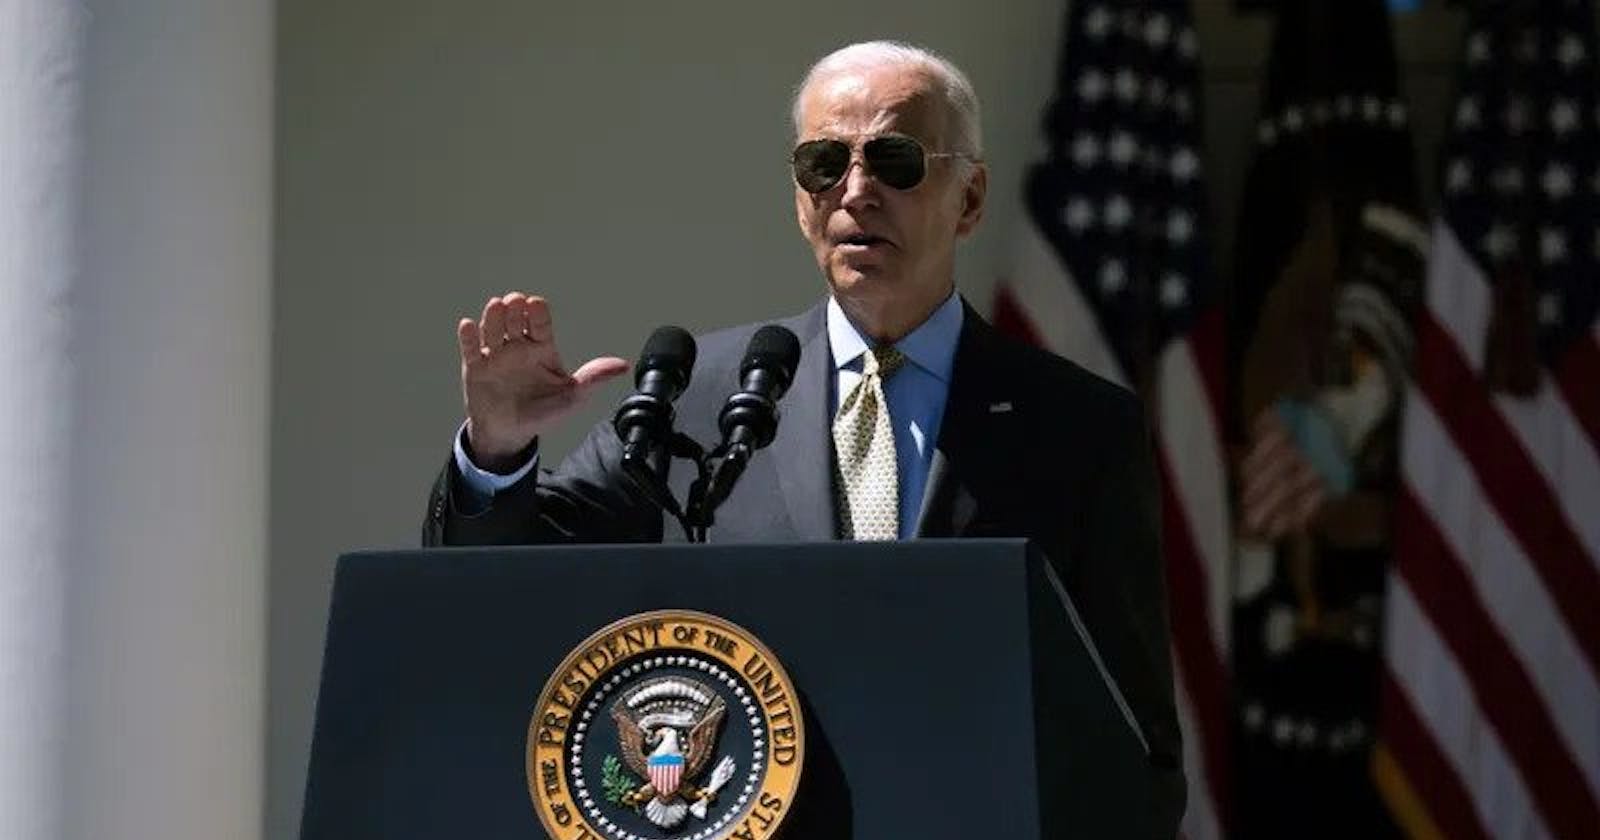 Joe Biden were deemed "absurd" by Rep. Ken Buck